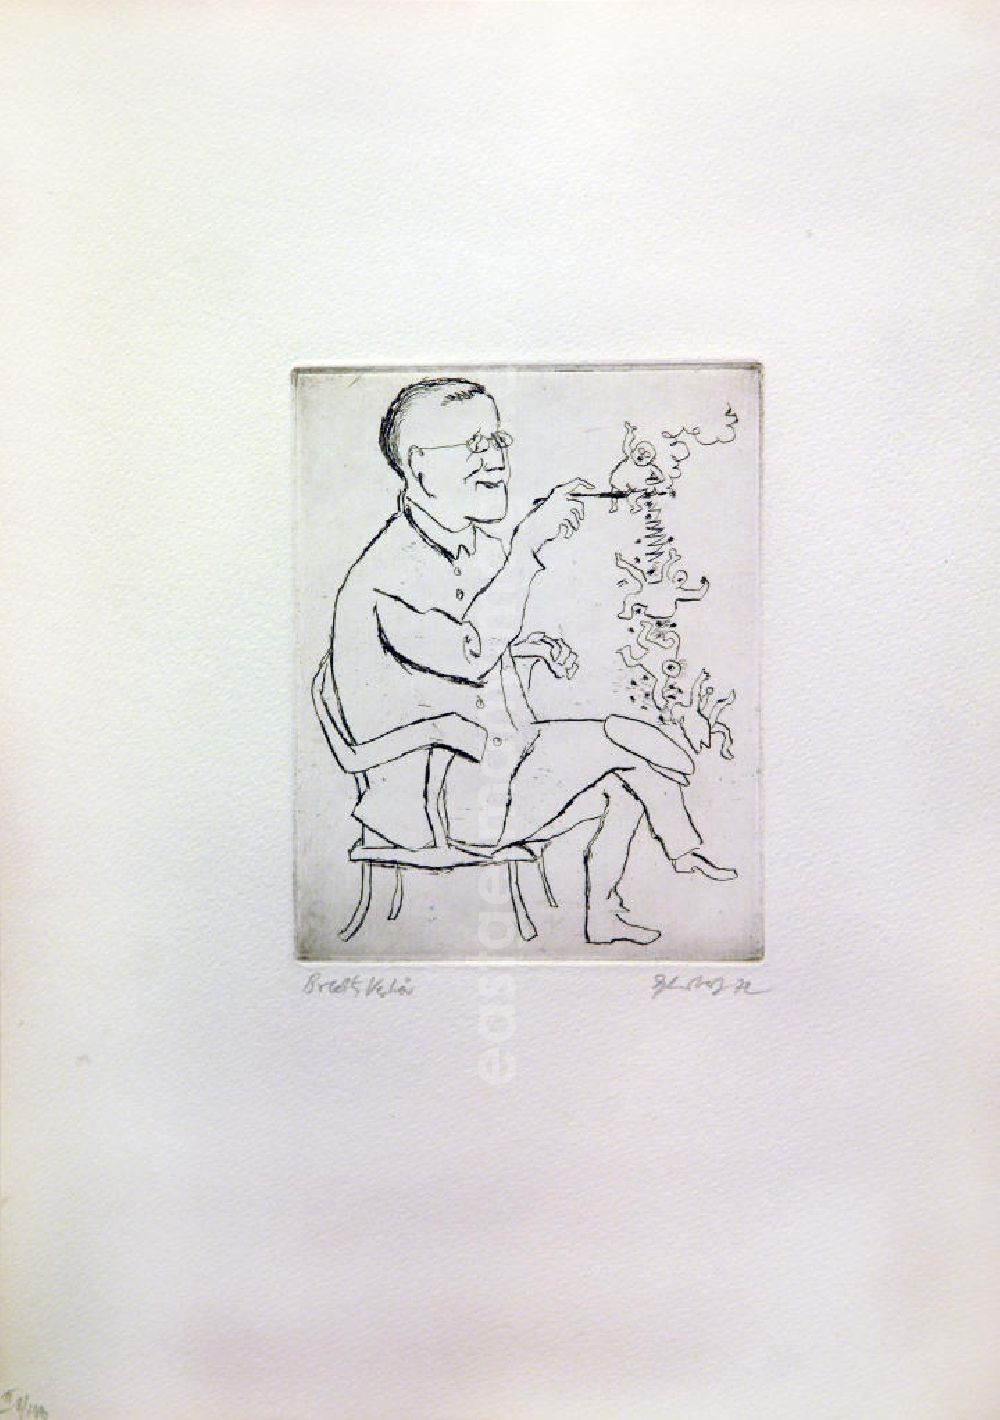 GDR picture archive: Berlin - Grafik von Herbert Sandberg über Bertolt Brecht (*10.02.1898 †14.08.1956) aus dem Jahr 1972 Brechts Verhör 16,8x13,4cm Radierung und Aquatinta, handsigniert, II 8/14